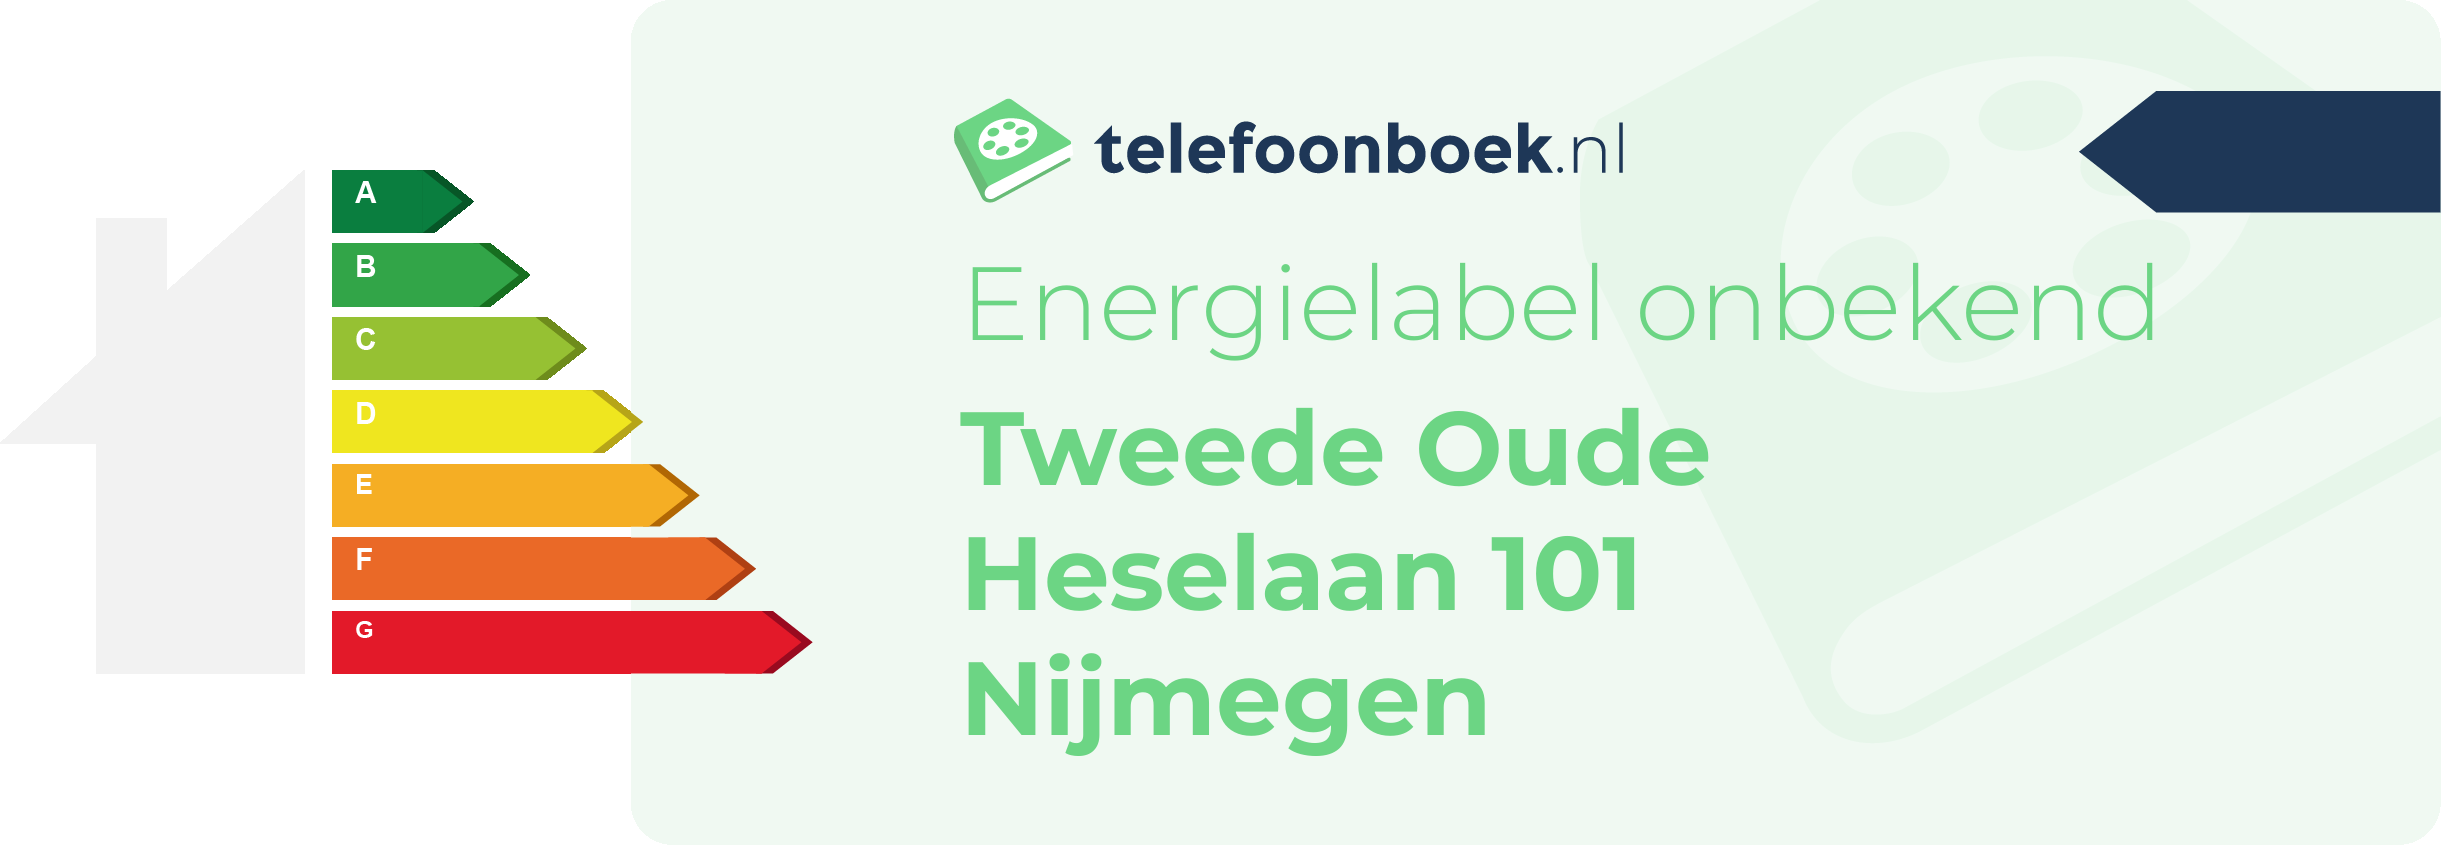 Energielabel Tweede Oude Heselaan 101 Nijmegen